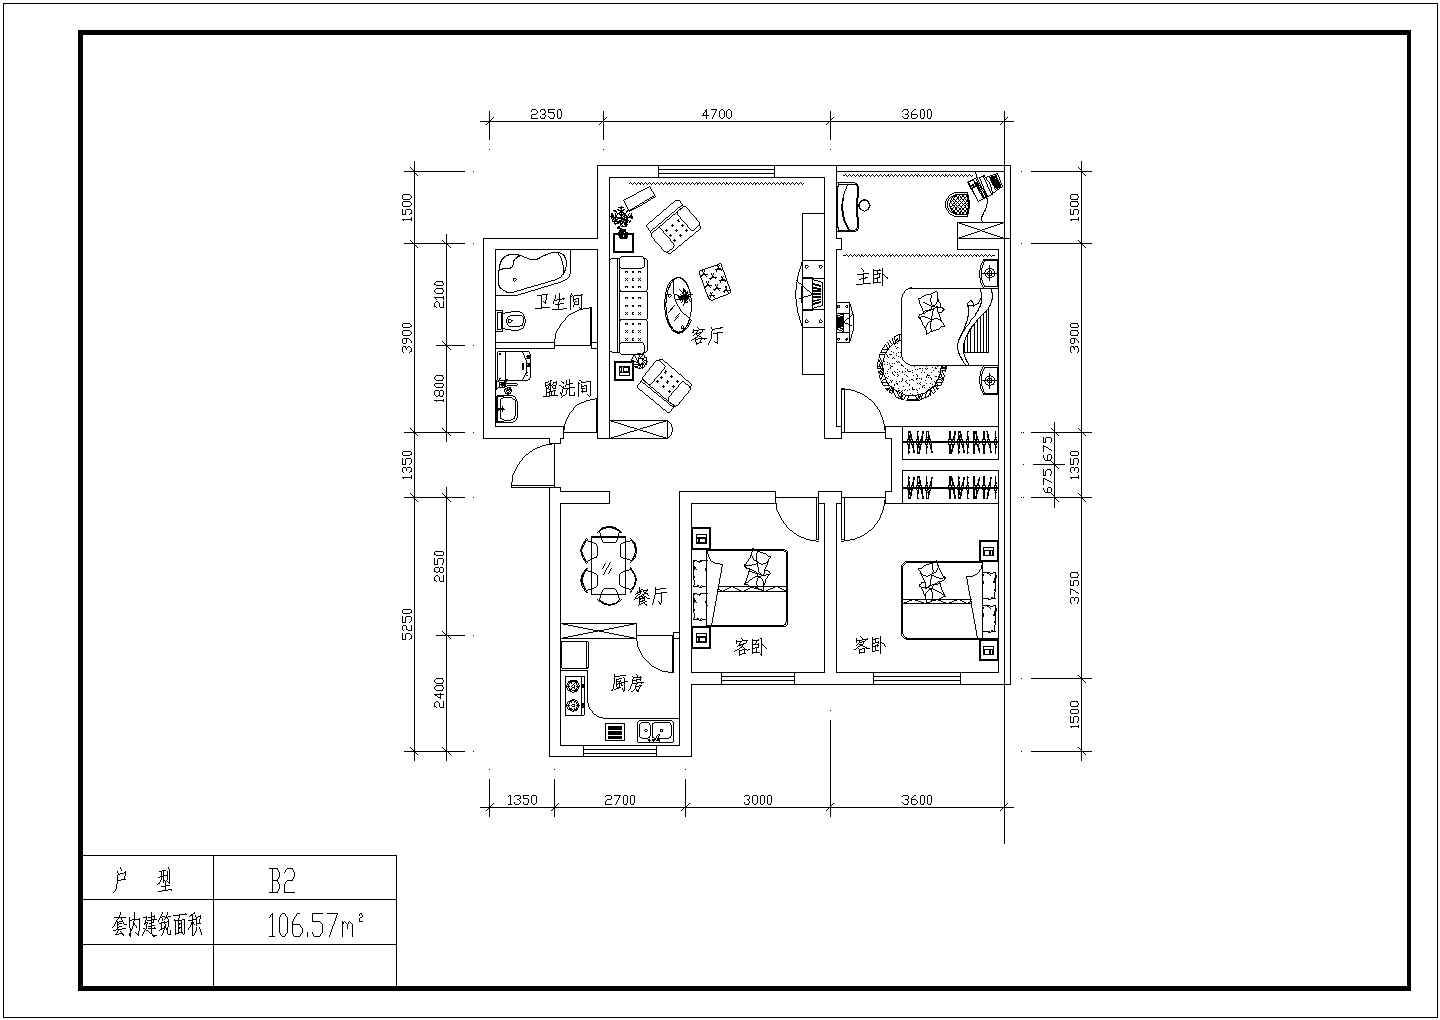 经典套房户型方案图【独户21种设计、户型面积80至165平米之间，1梯2户1种设计对称户型93.77平米】